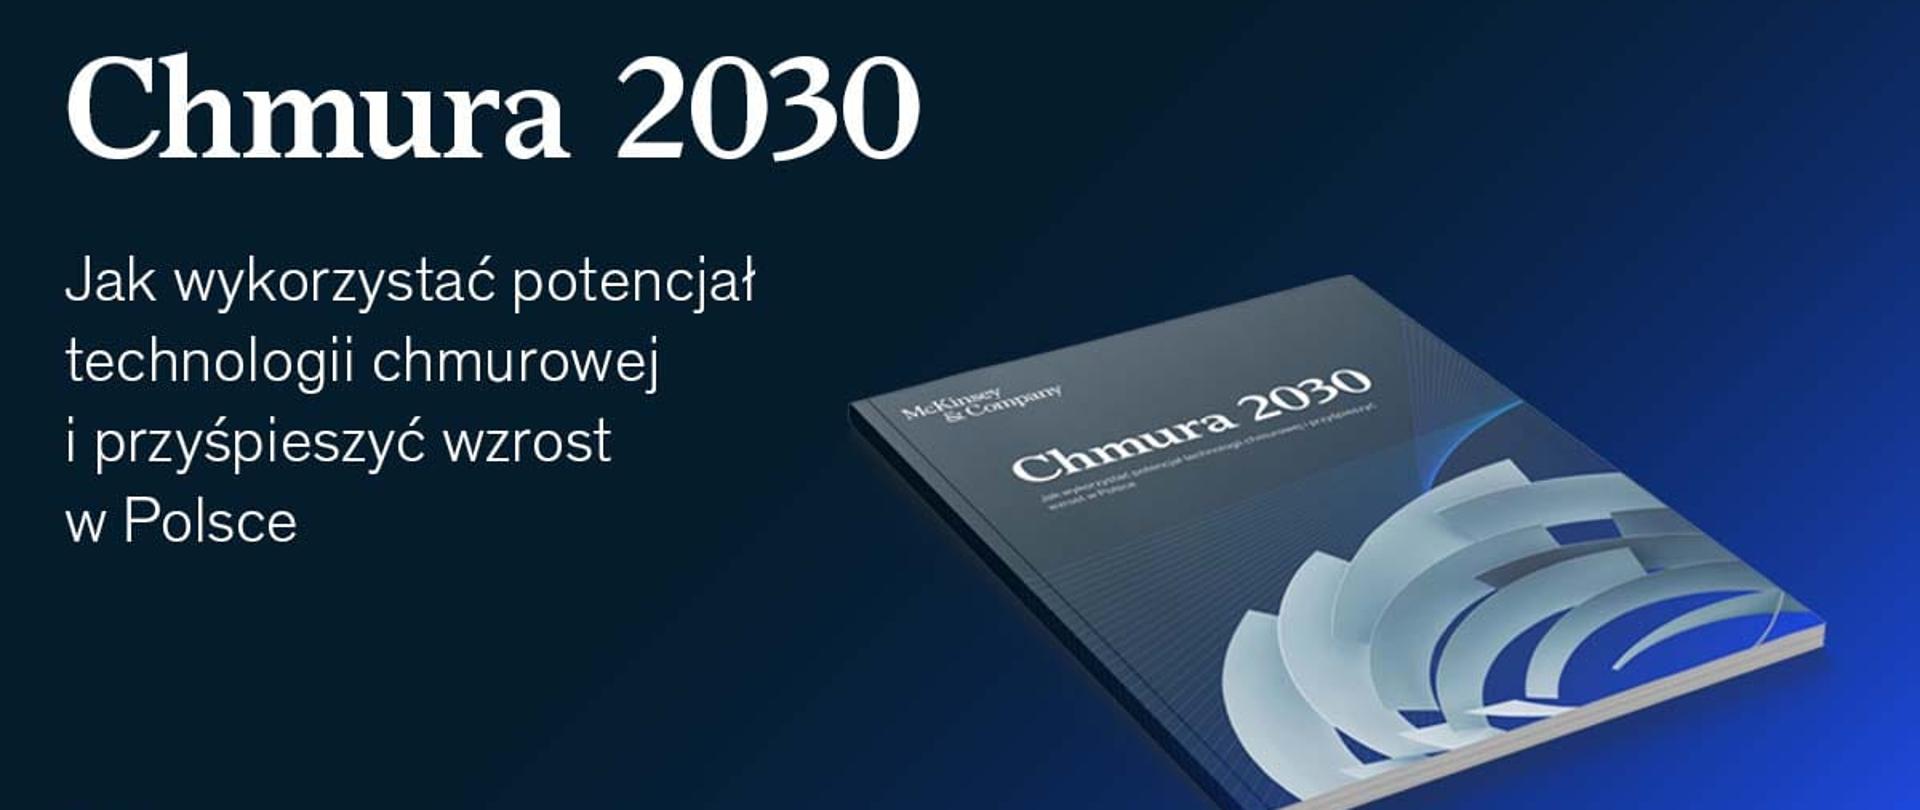 Zapowiedź do przedstawienia raportu "Raport Chmura 2030 r." Na zdjęciu widać wydrukowany i oprawiony w okładkę raport.